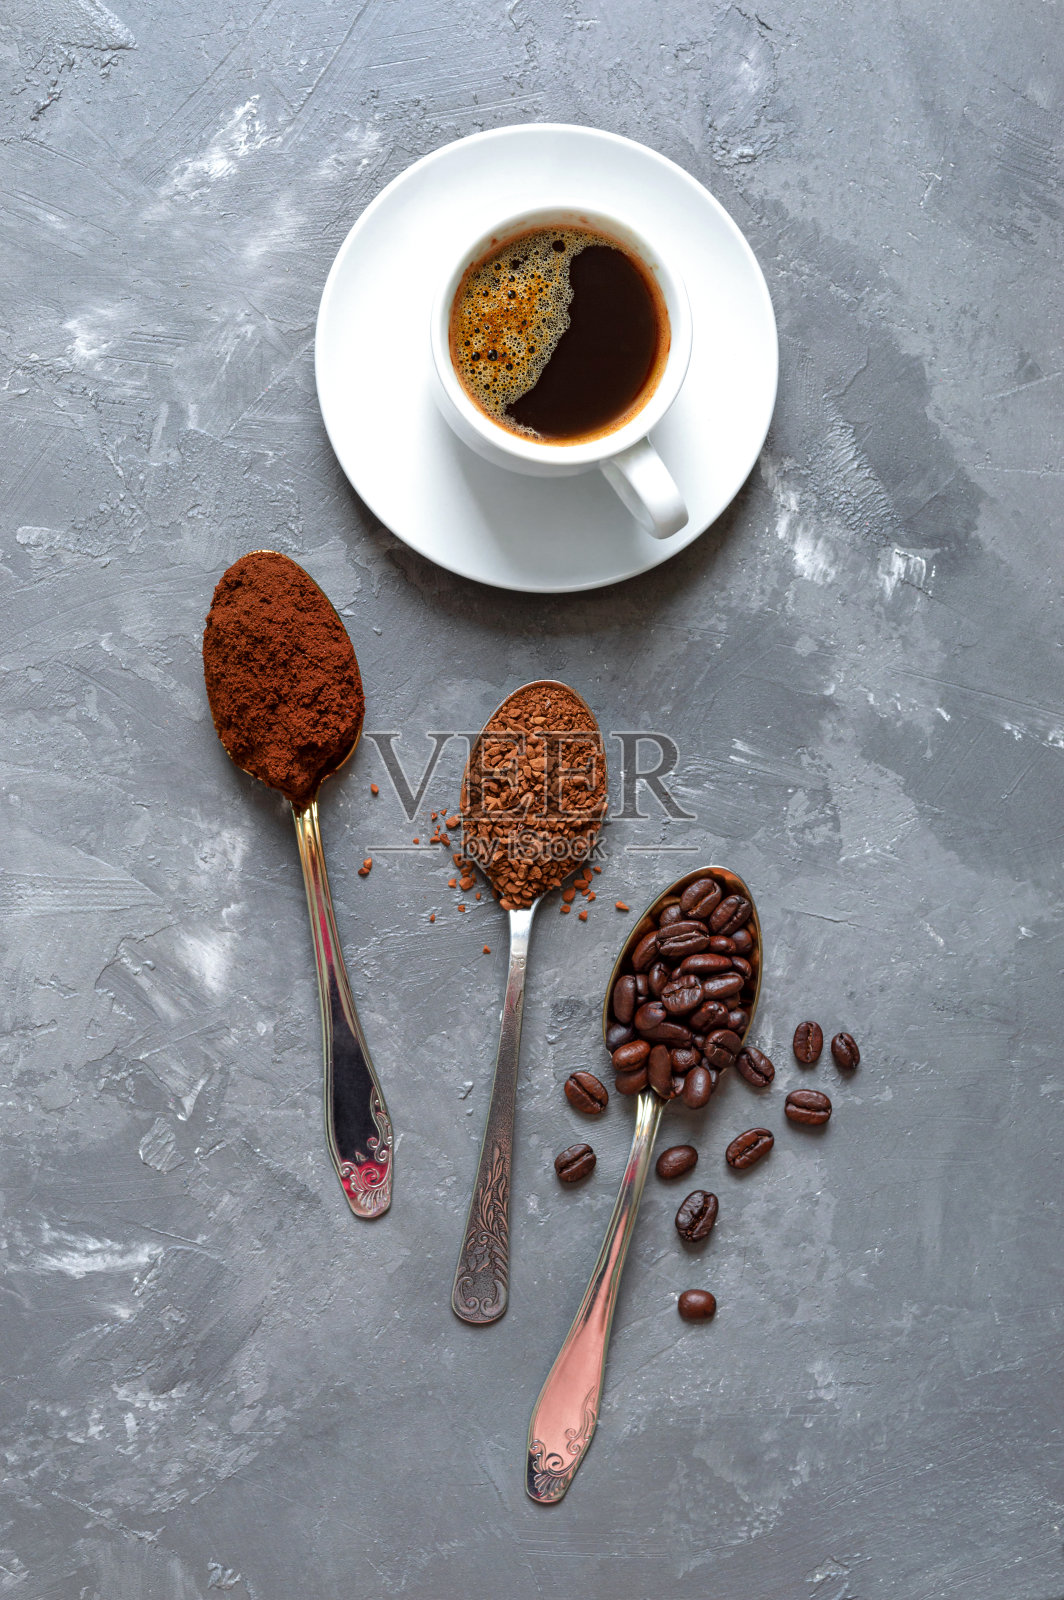 将咖啡豆、磨碎的速溶咖啡放在勺子里，再加一杯新鲜的意式浓缩咖啡照片摄影图片